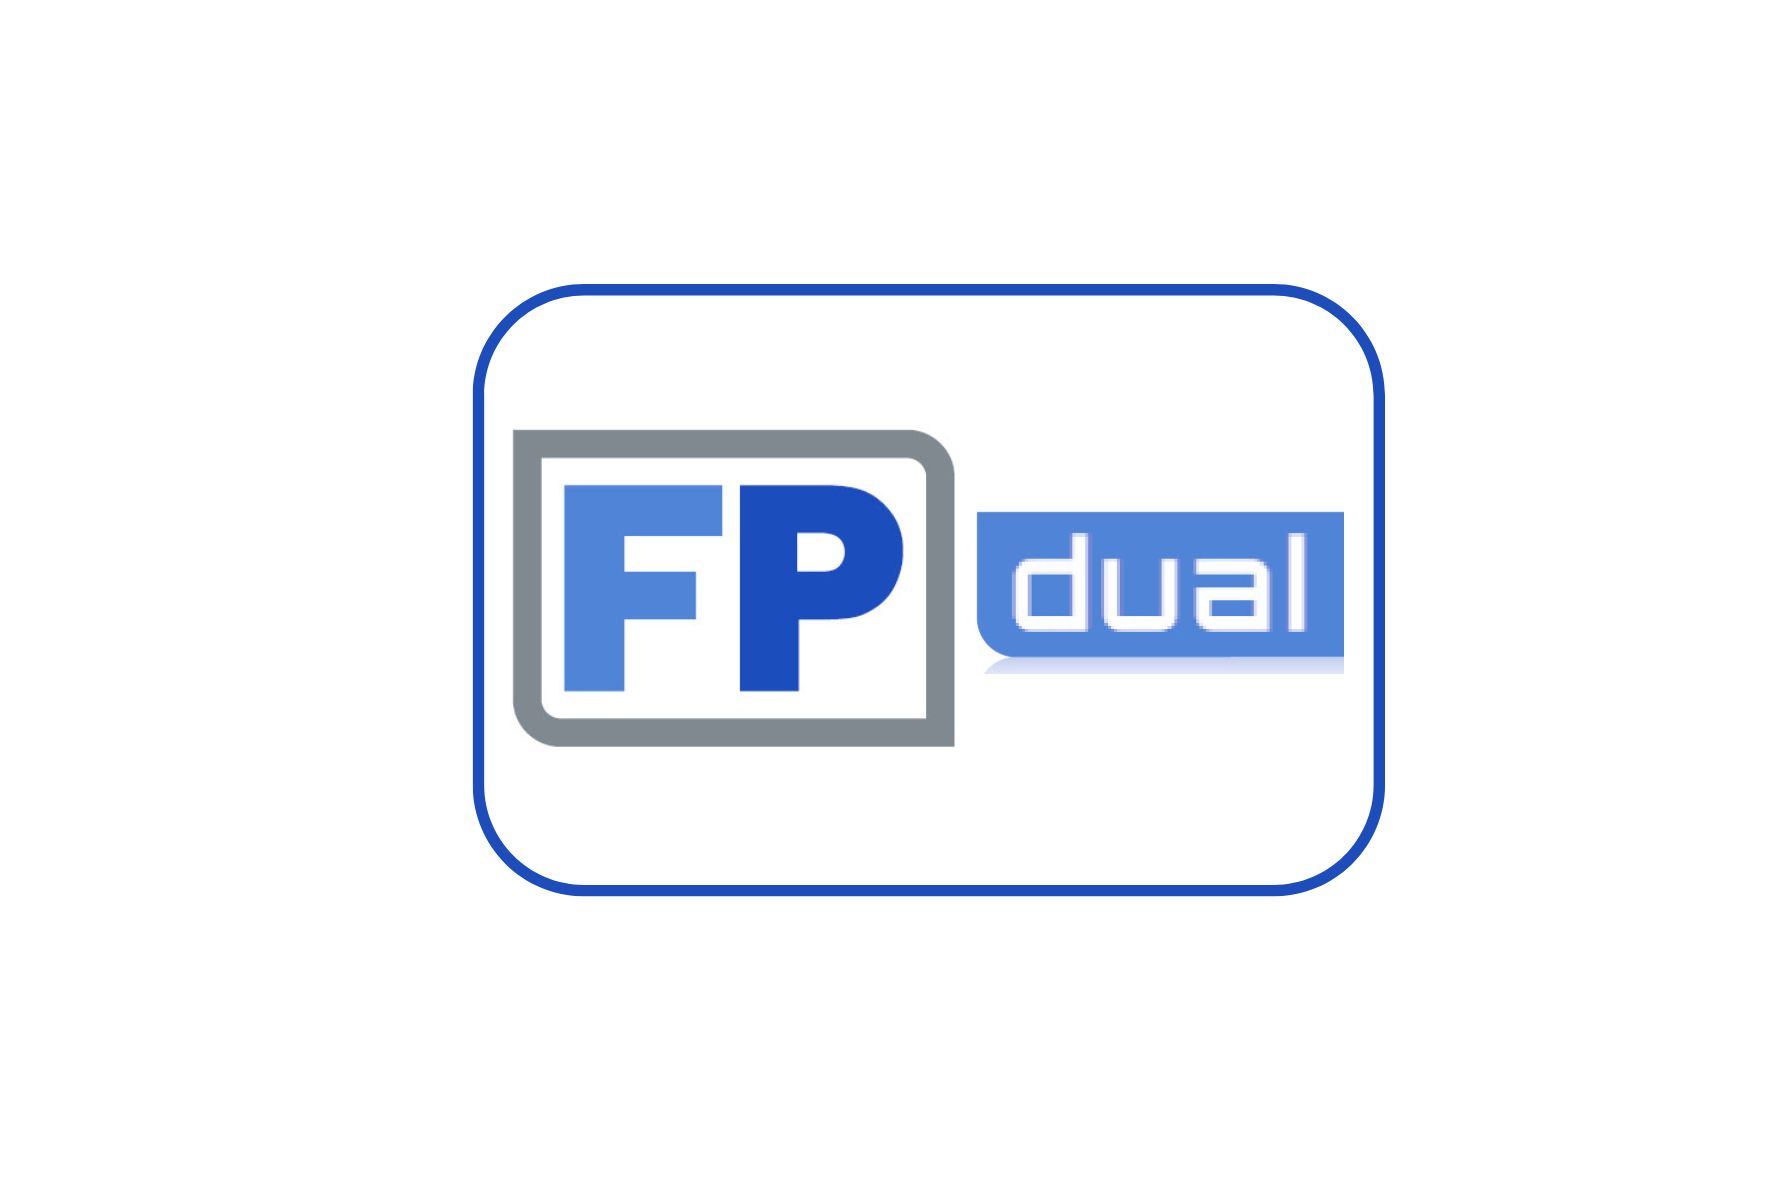 FP dual